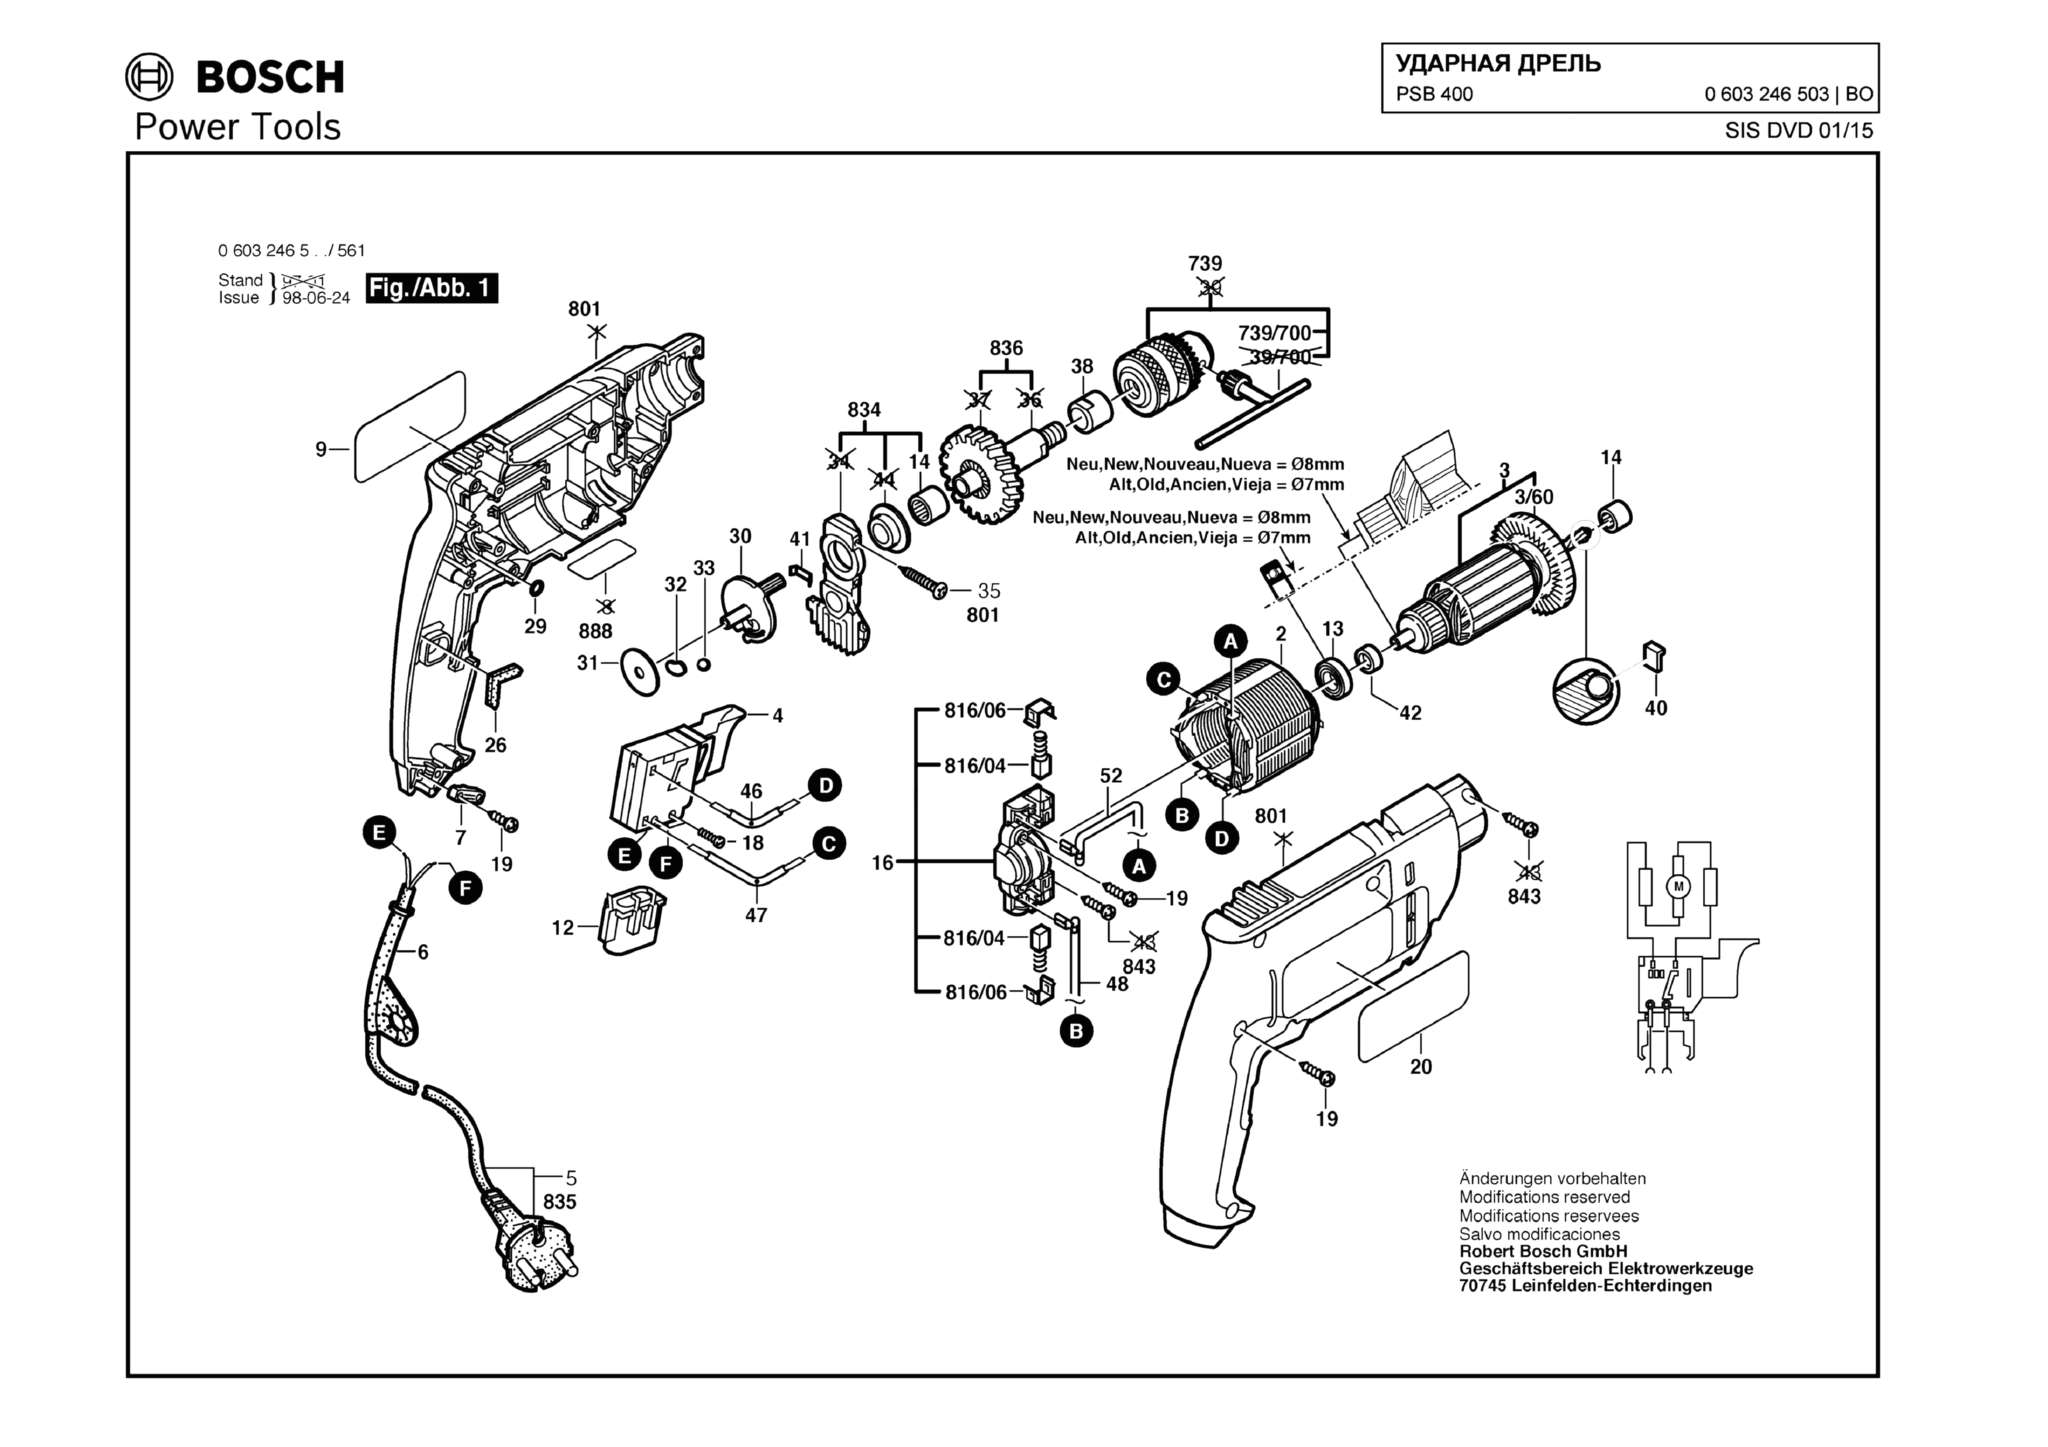 Запчасти, схема и деталировка Bosch PSB 400 (ТИП 0603246503)